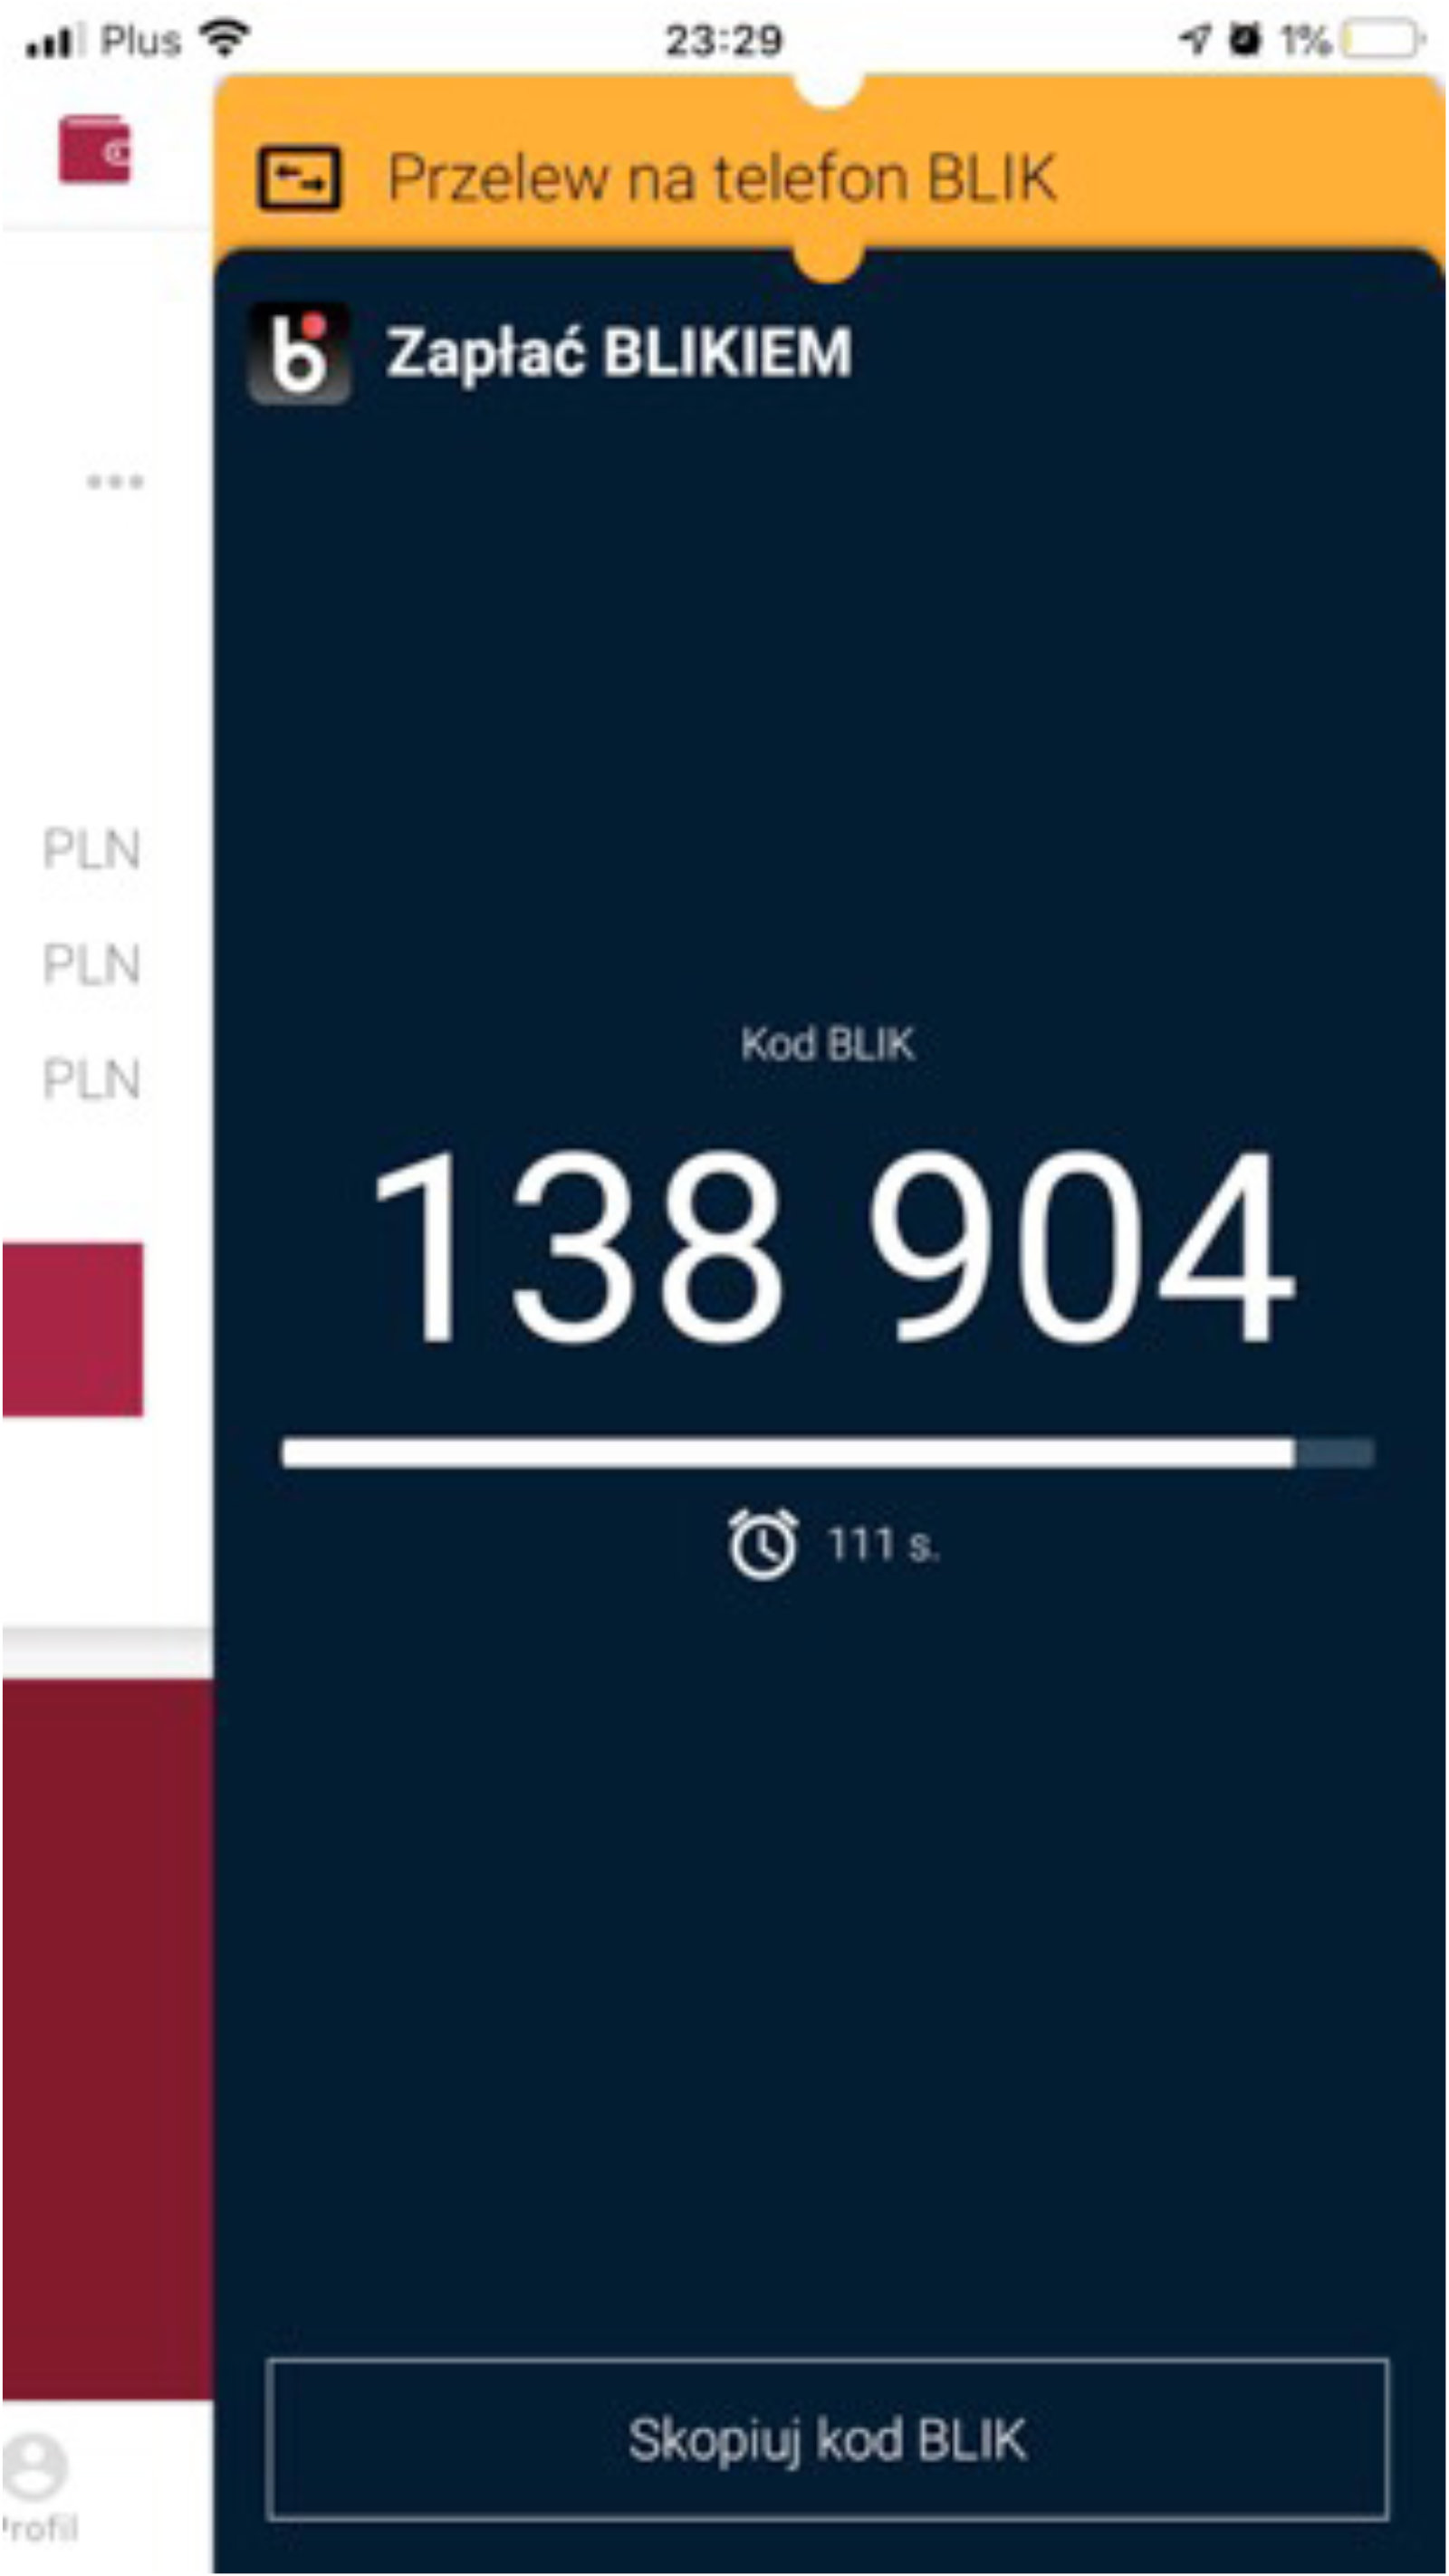 Zrzut ekranu z aplikacji bankowej z wygenerowanym numerem BLIK